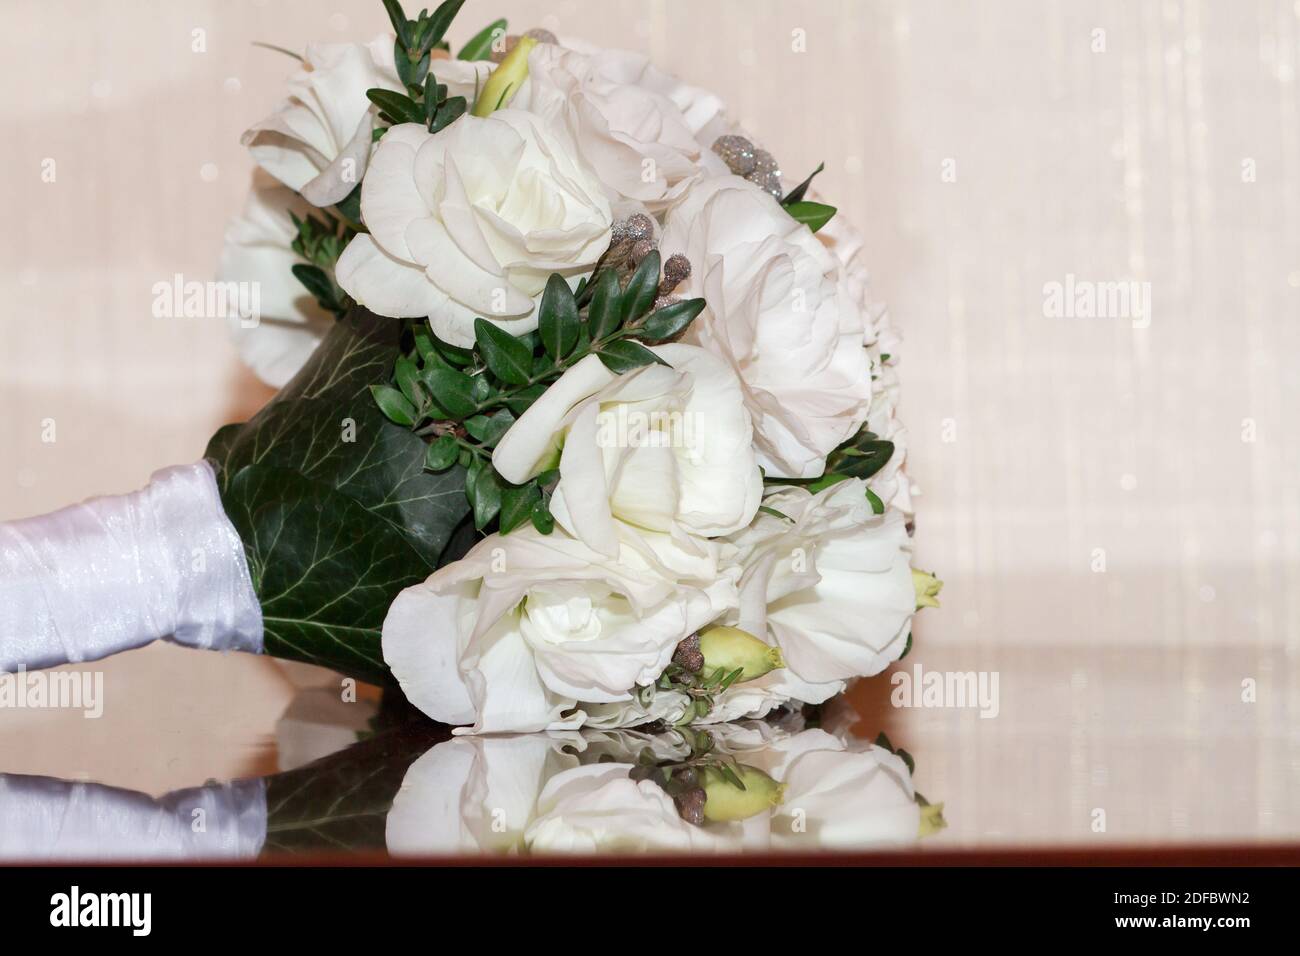 Un beau bouquet de fleurs blanches pour la mariée. Fleuriste de mariage  Photo Stock - Alamy